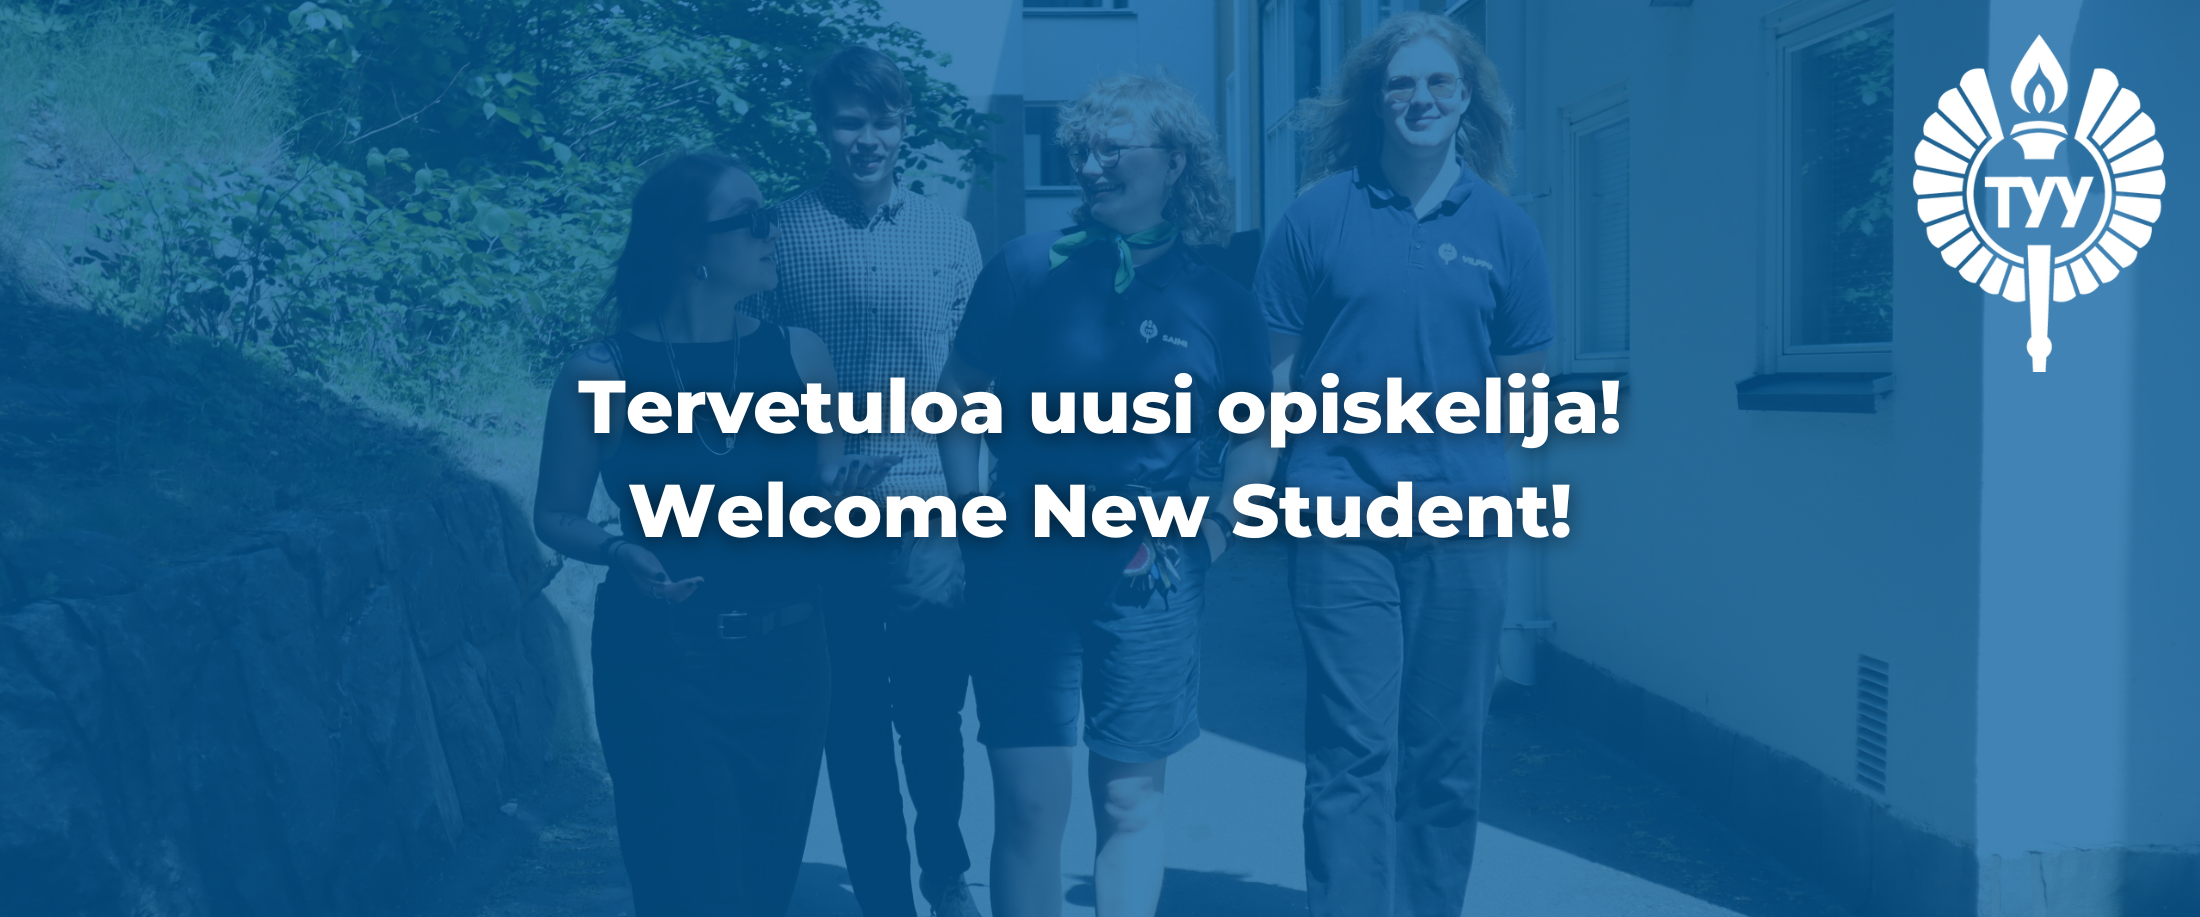 neljä henkilöä kävelemässä, sininen filtteri päällä ja teksti: tervetuloa uusi opiskelija